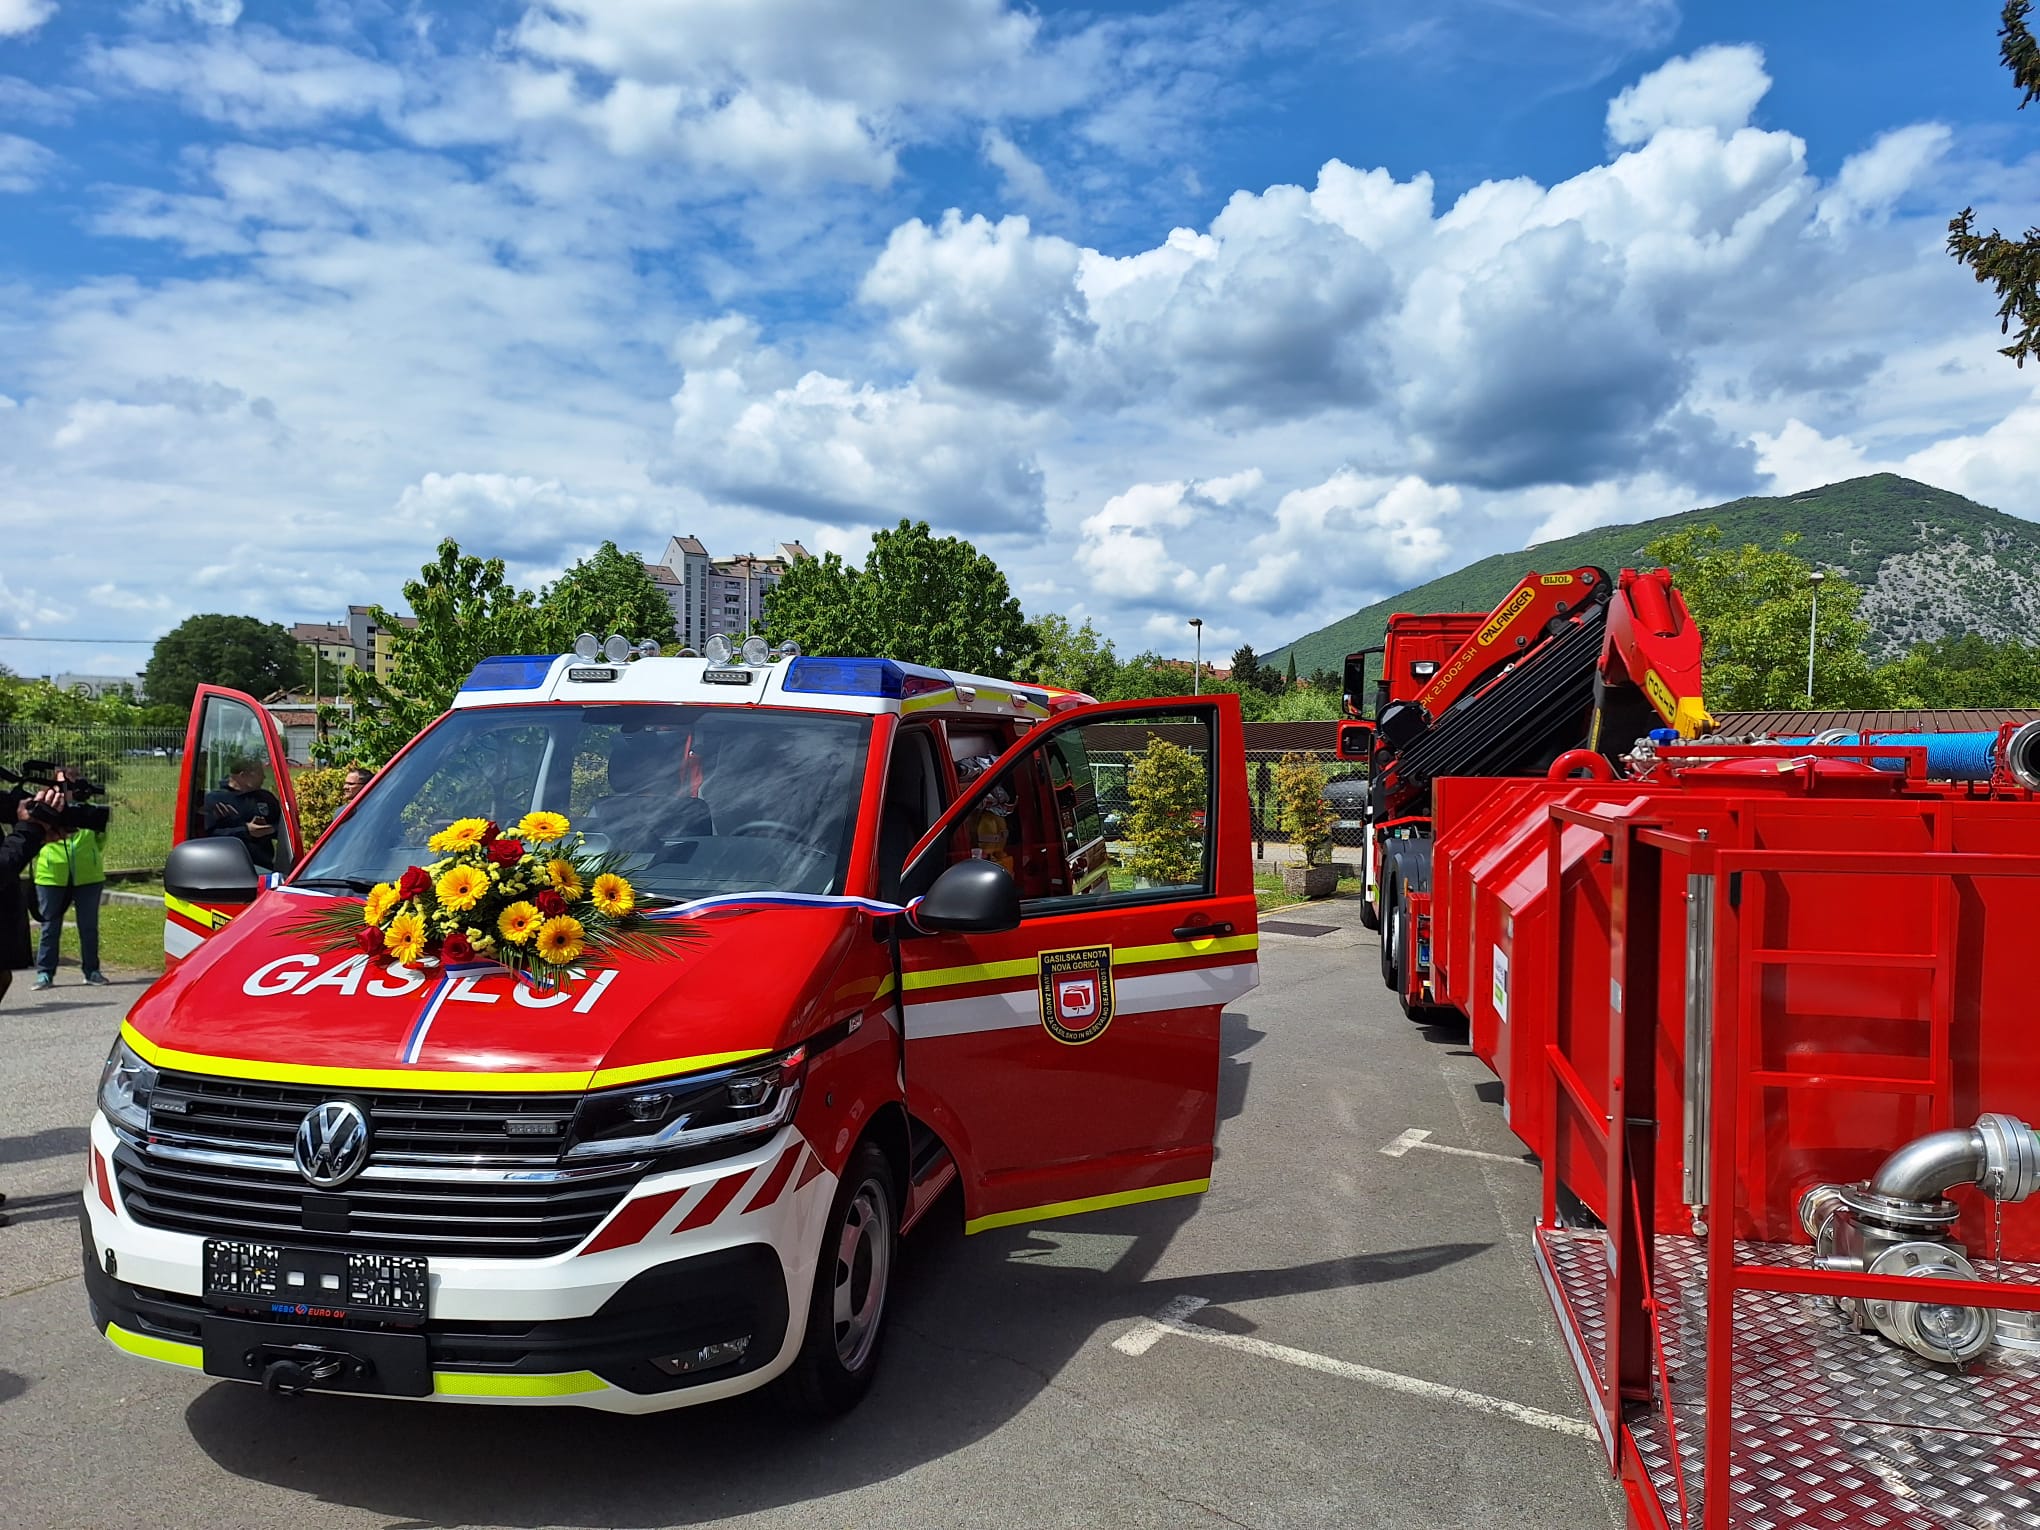 Immagine per Ambulanza e autocisterna, nuovi veicoli ai gasilci di Nova Gorica: resta il nodo sede